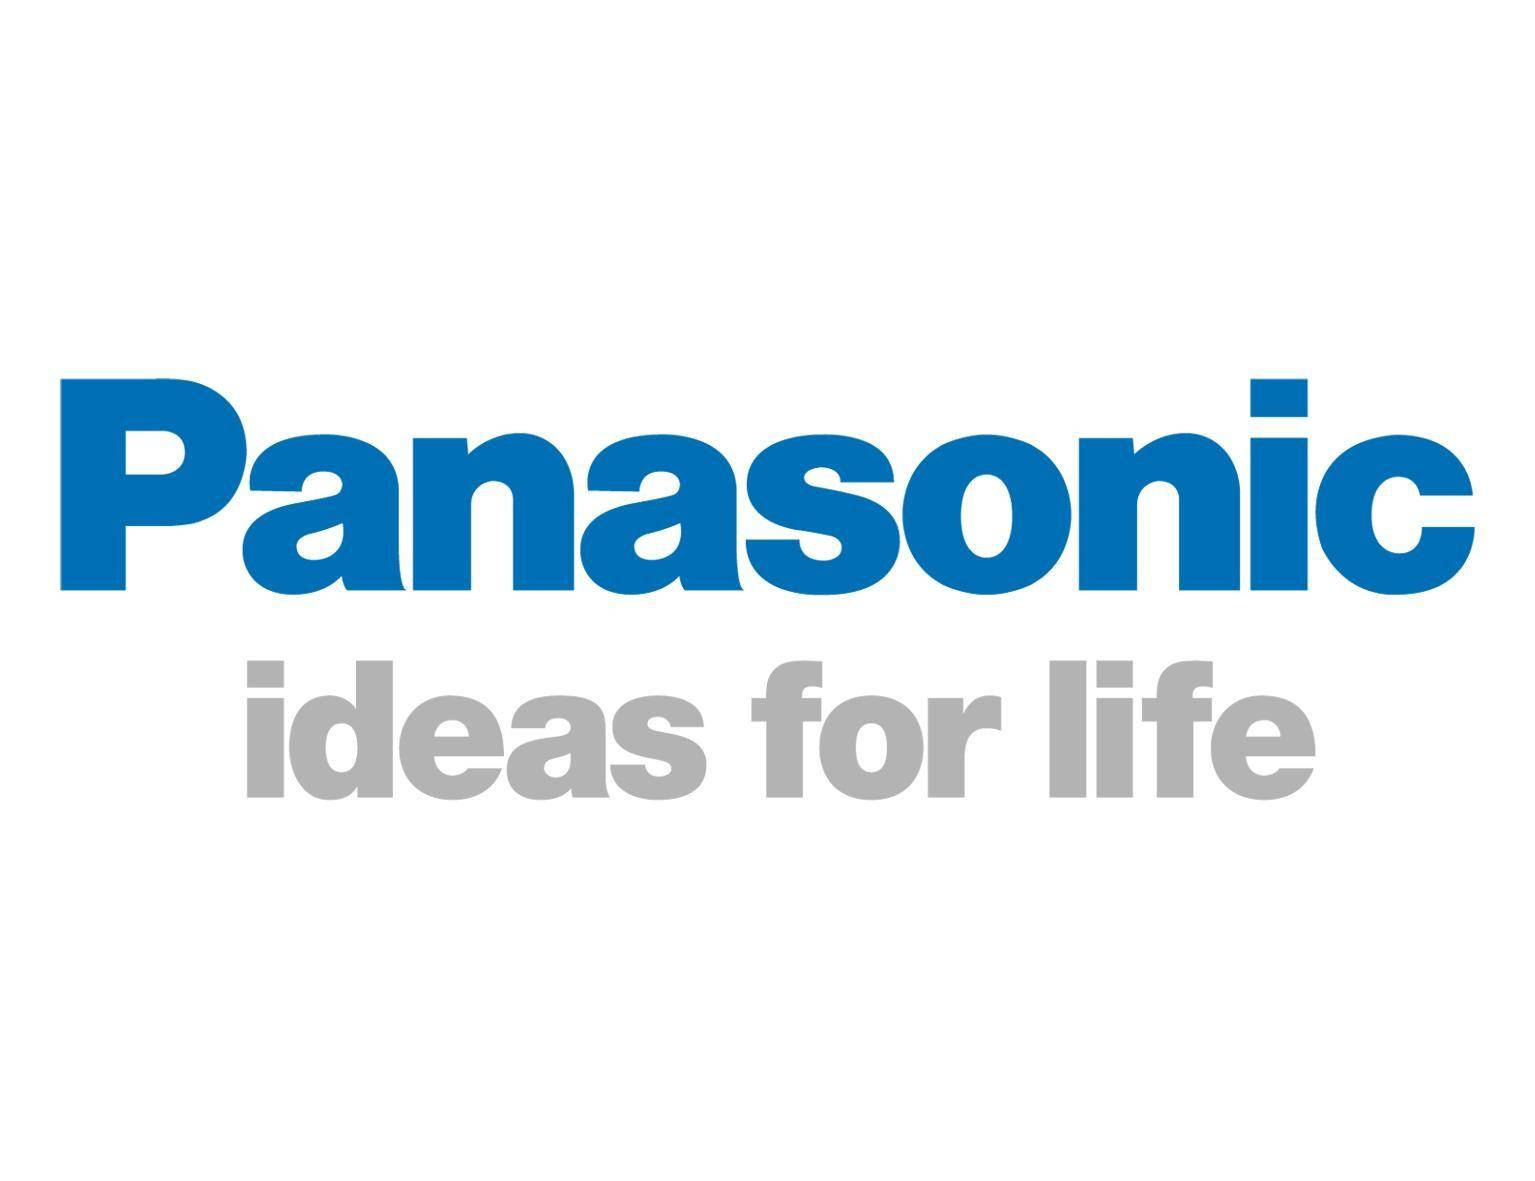 Panasonic White Background Background